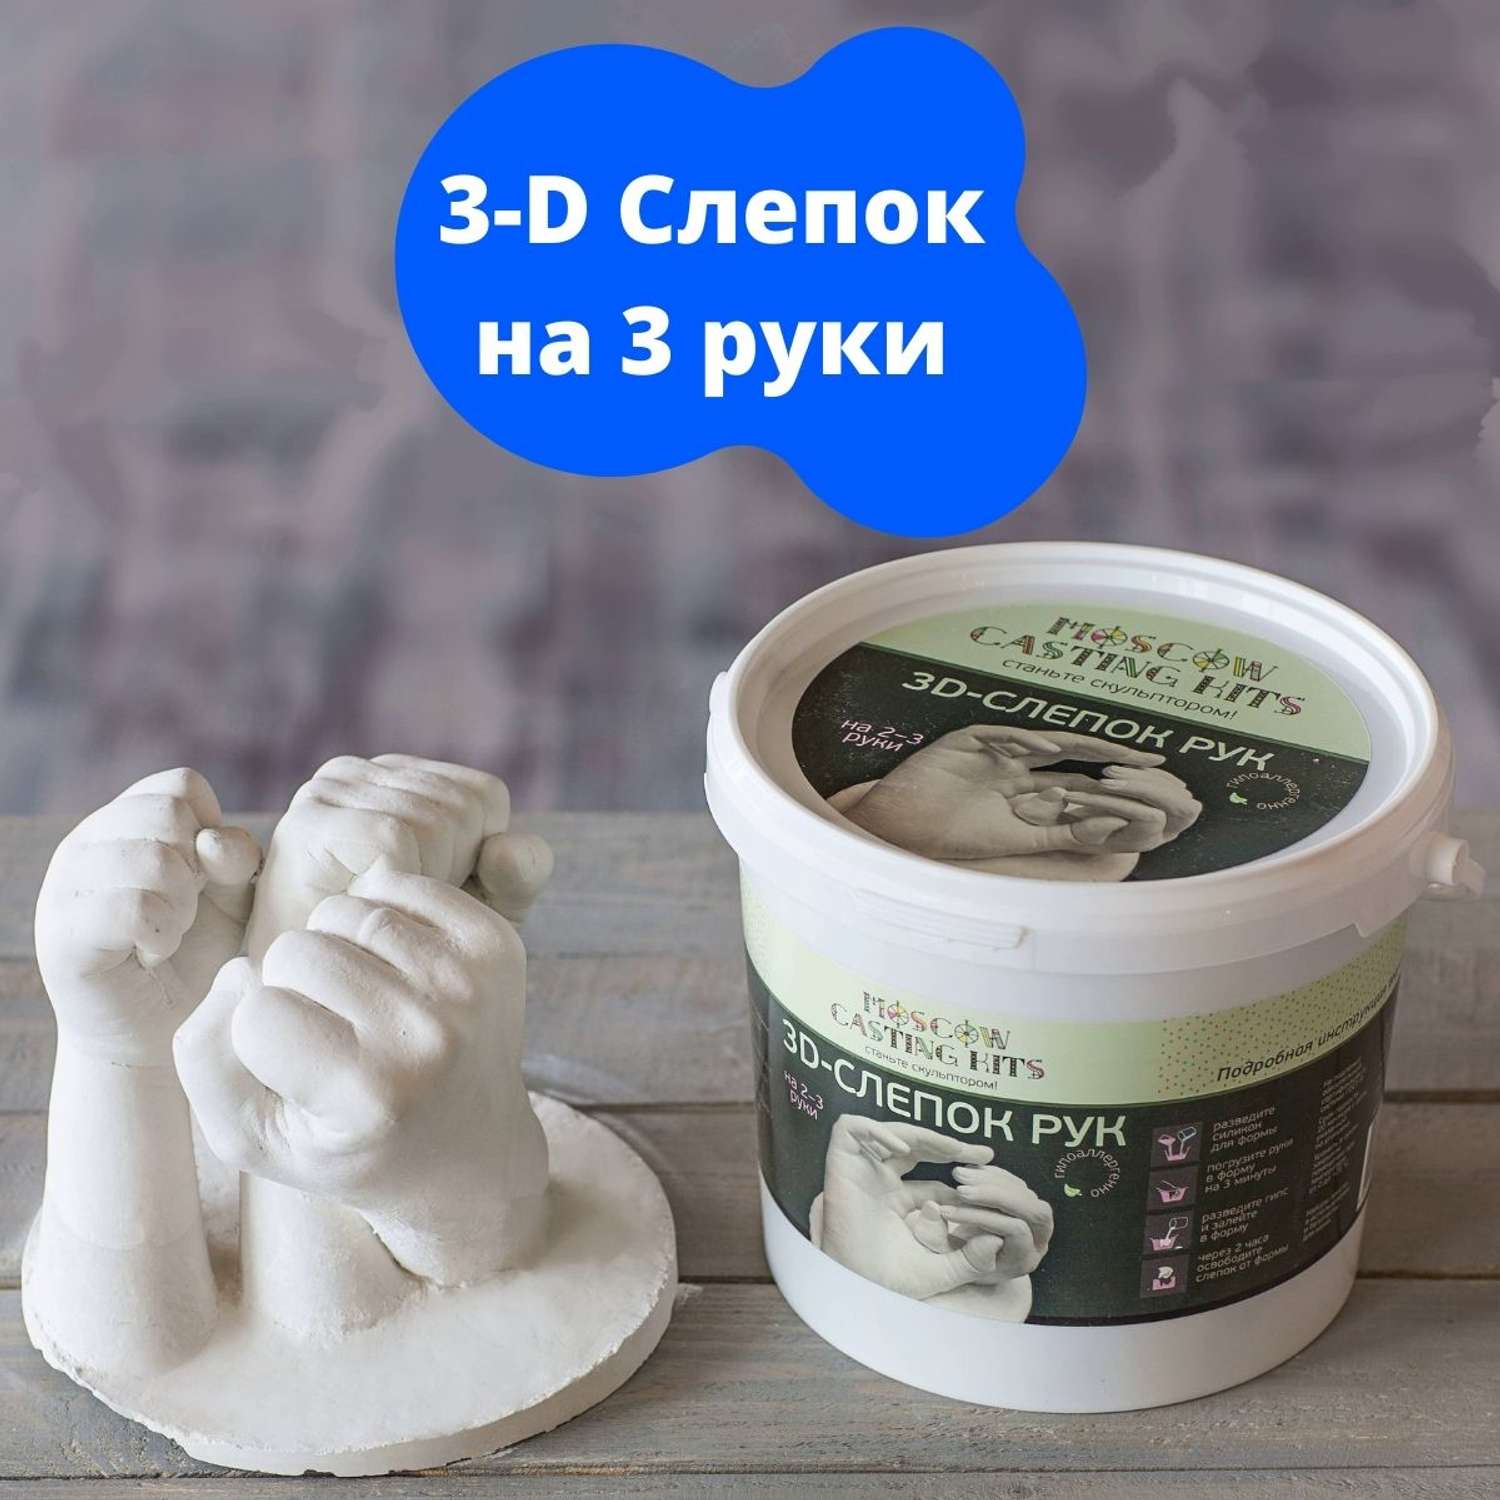 Подарочный набор Moscow Casting Kits 3D-слепок на 2-3 руки - фото 2